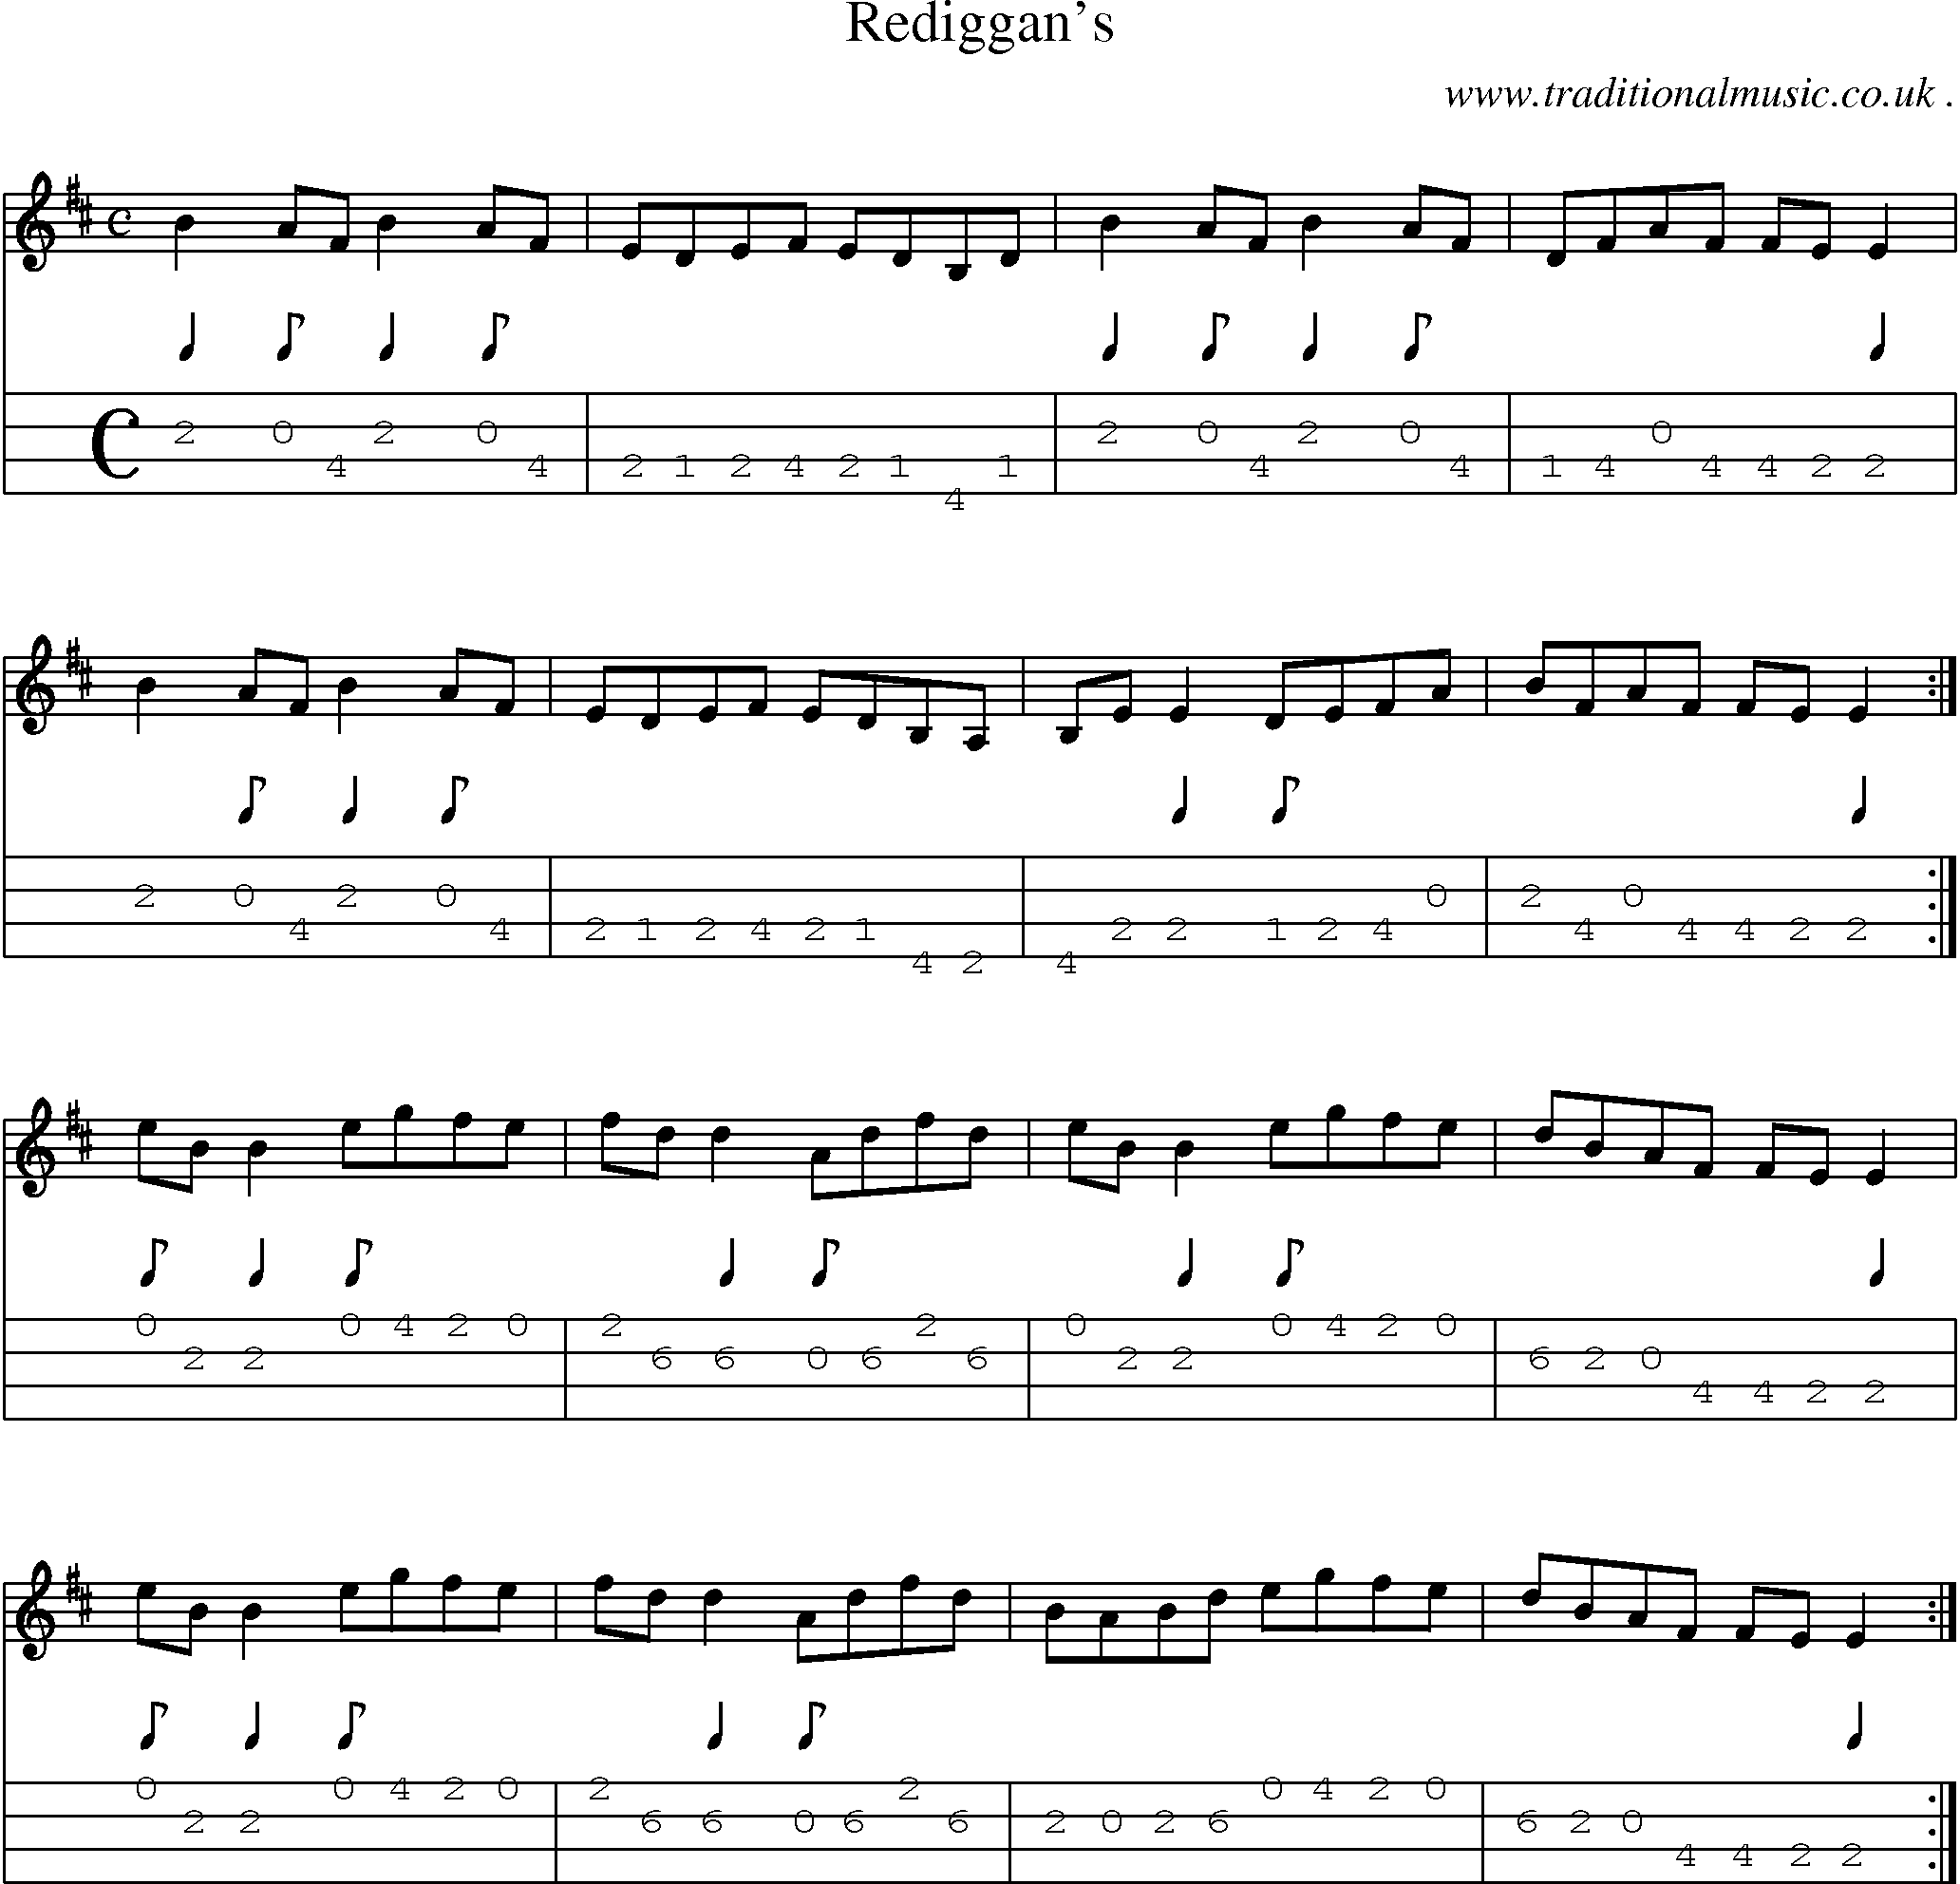 Sheet-Music and Mandolin Tabs for Rediggans